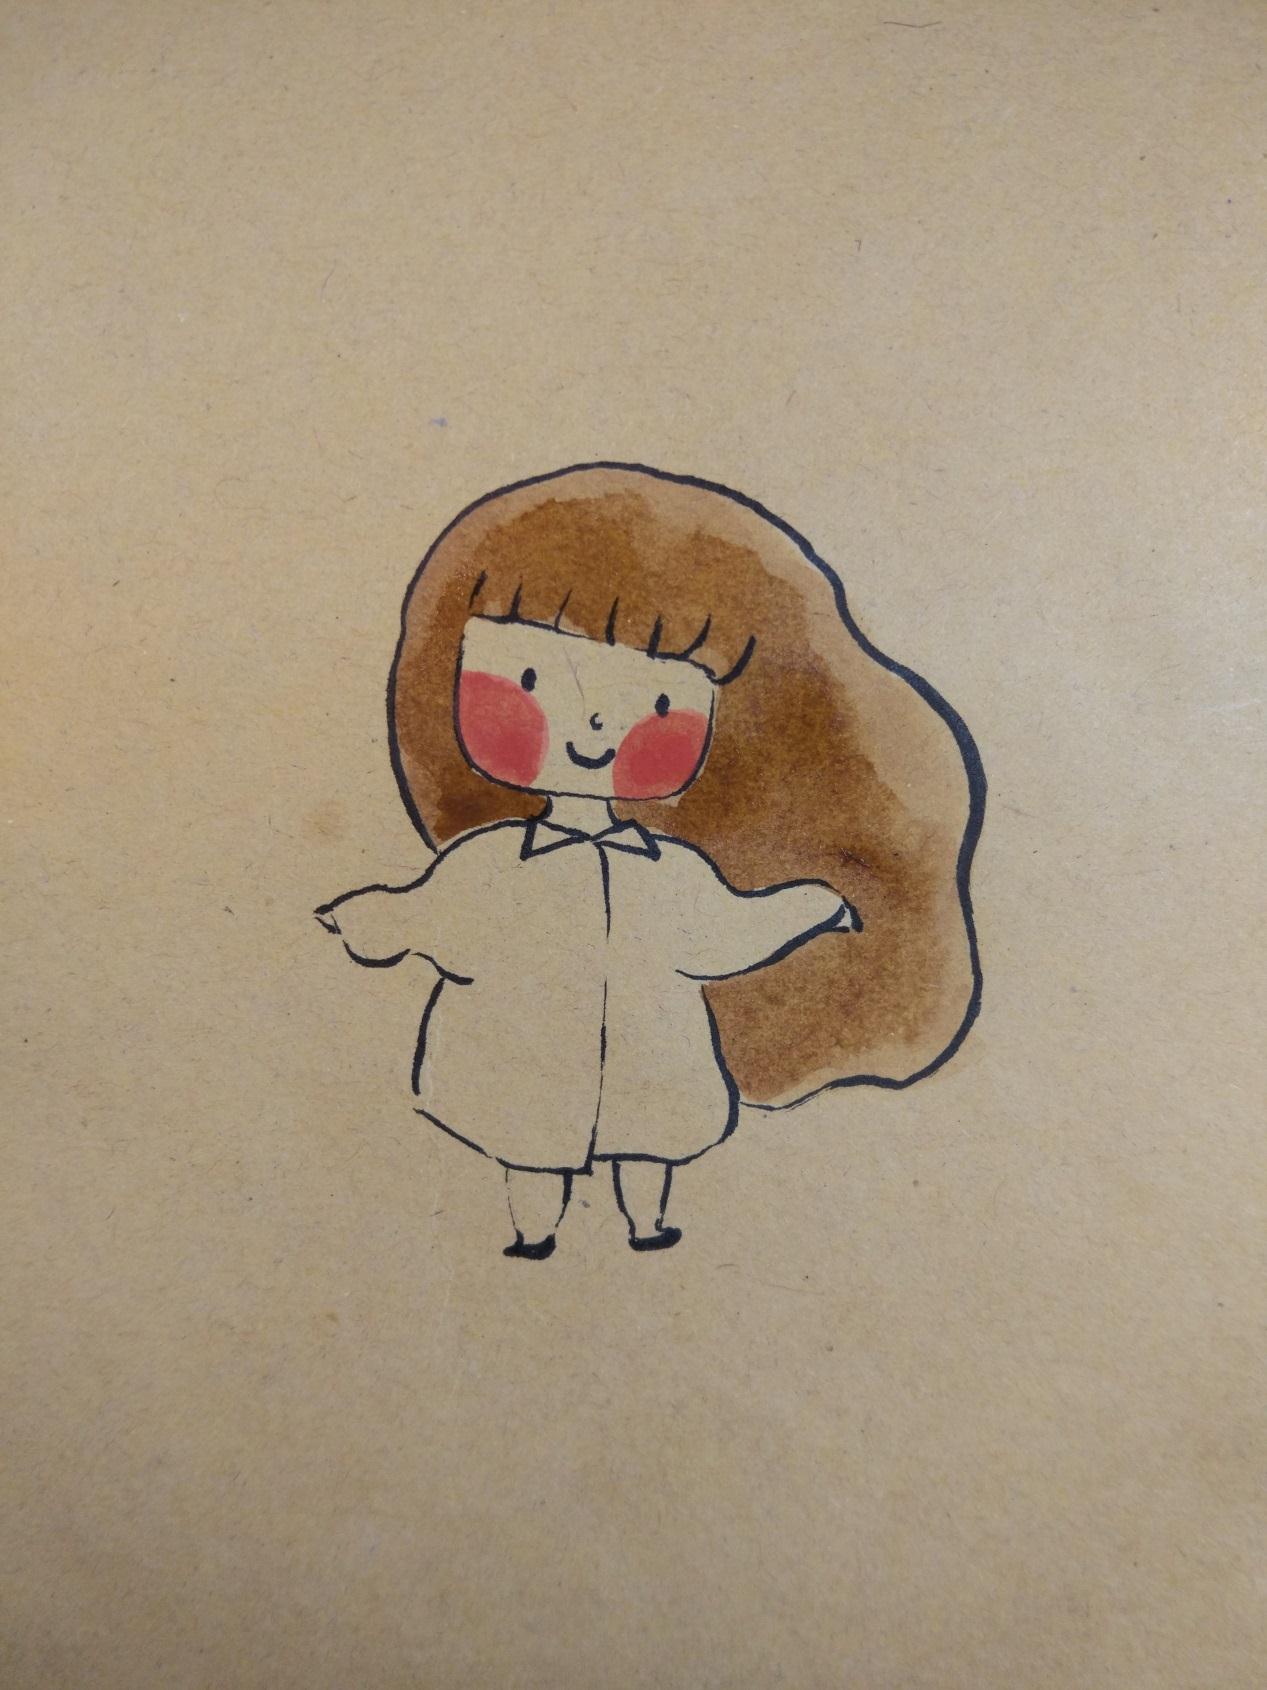 原创趣味彩绘画之漂亮的小女孩简单的绘制过程